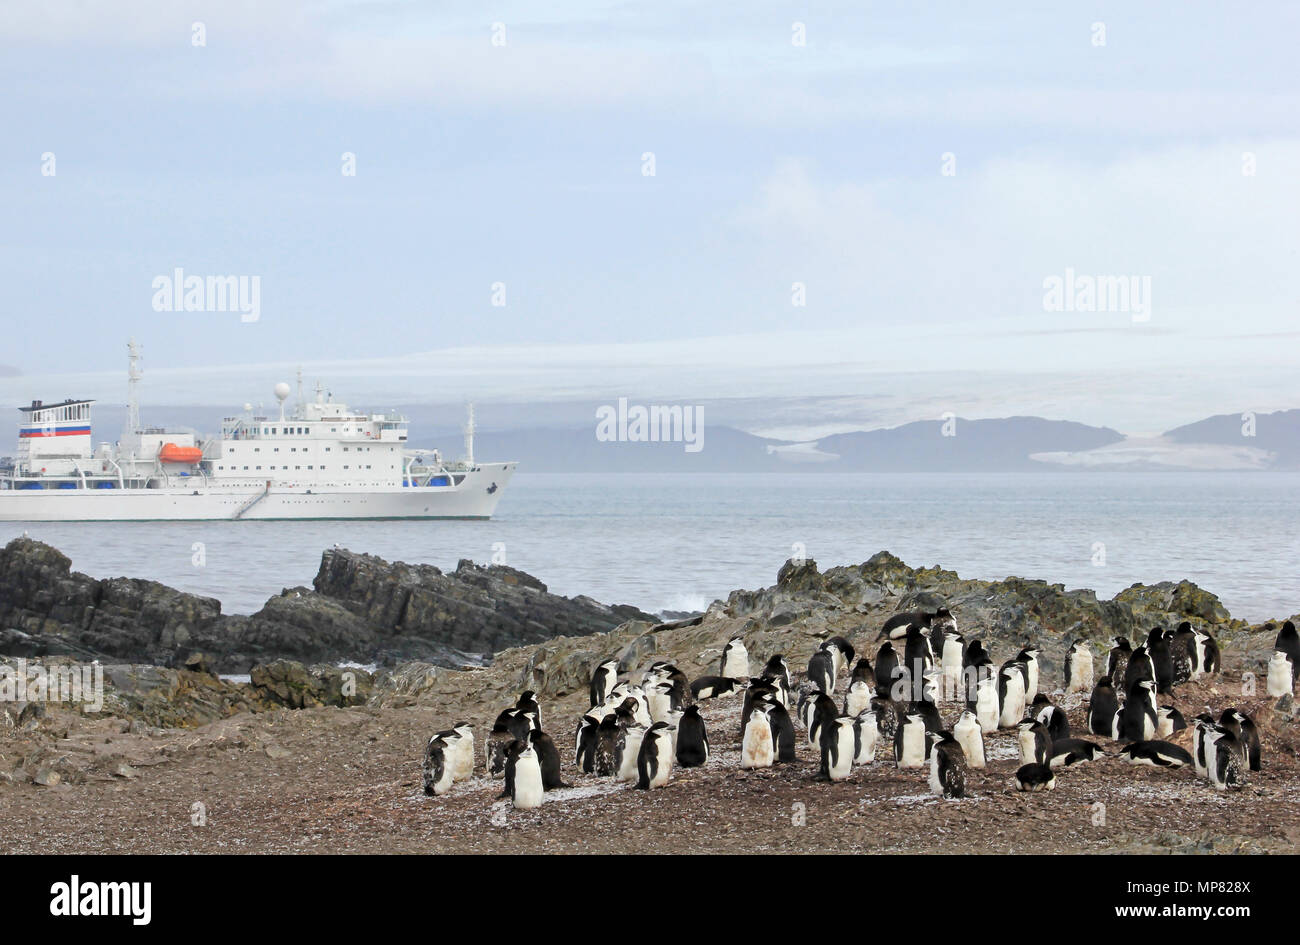 Wild Kinnriemen Pinguine mit der Antarktis Kreuzfahrt Schiff im Hintergrund, Antarktische Halbinsel, Antarktis Stockfoto